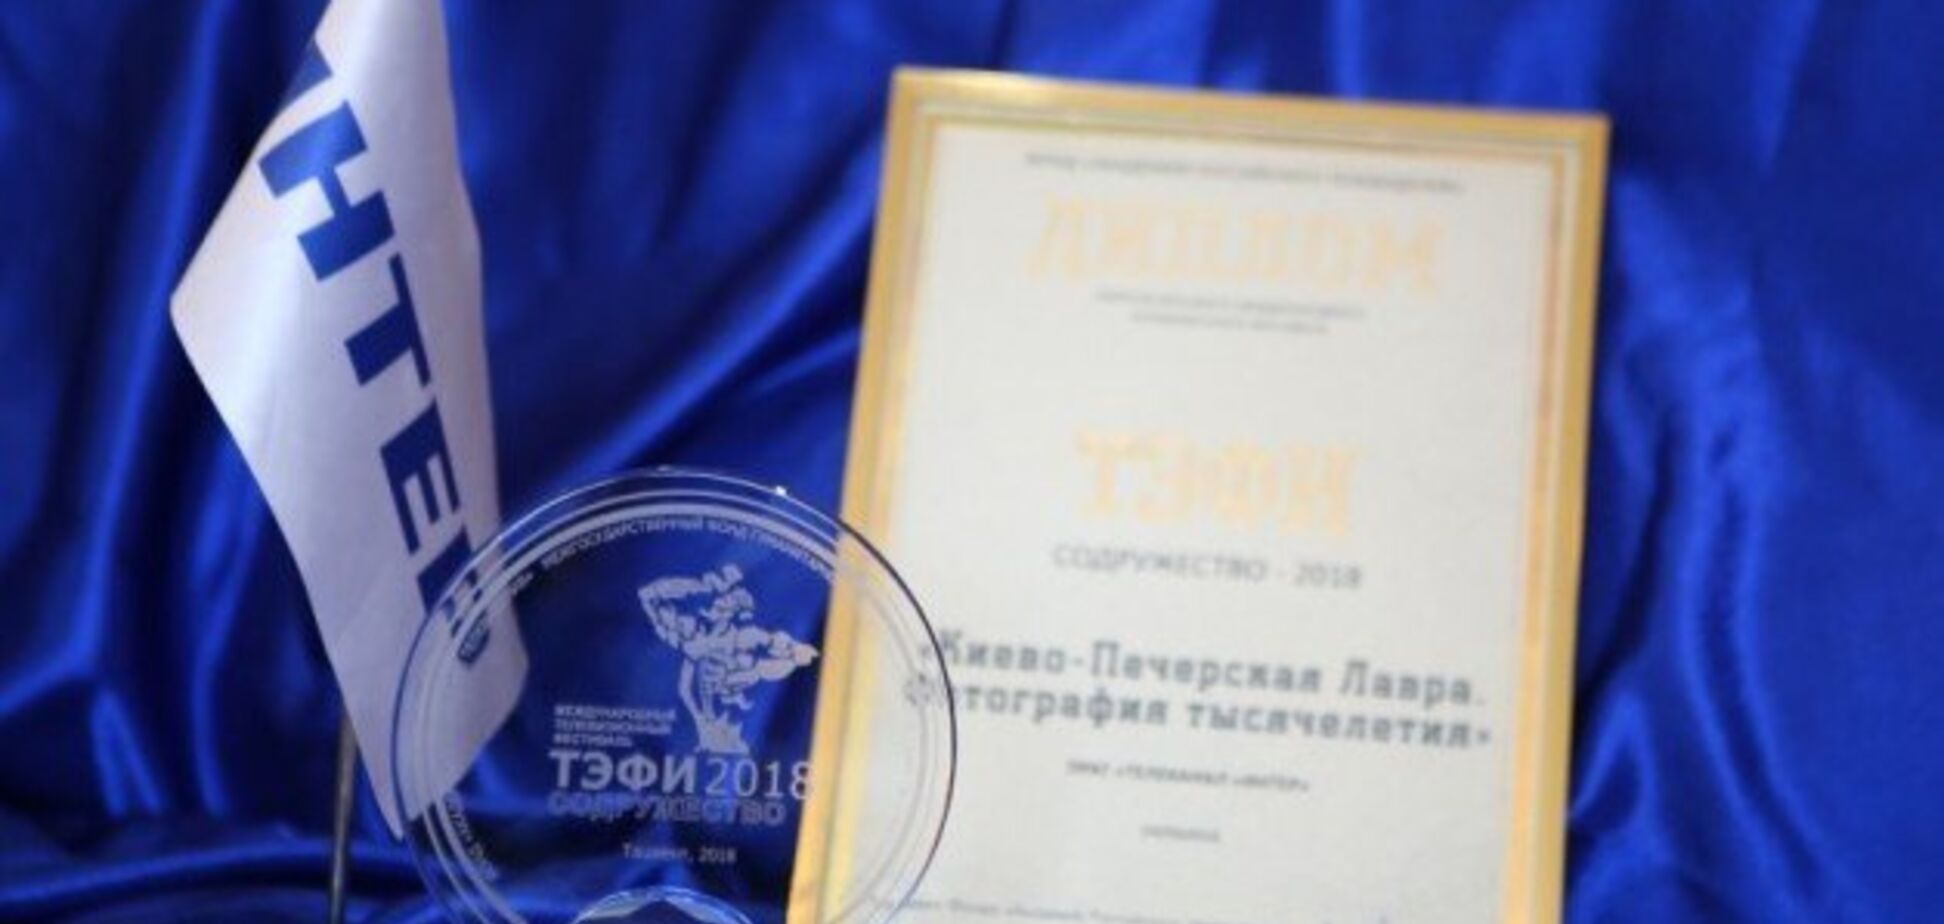 Скандальный украинский канал получил престижную премию в России